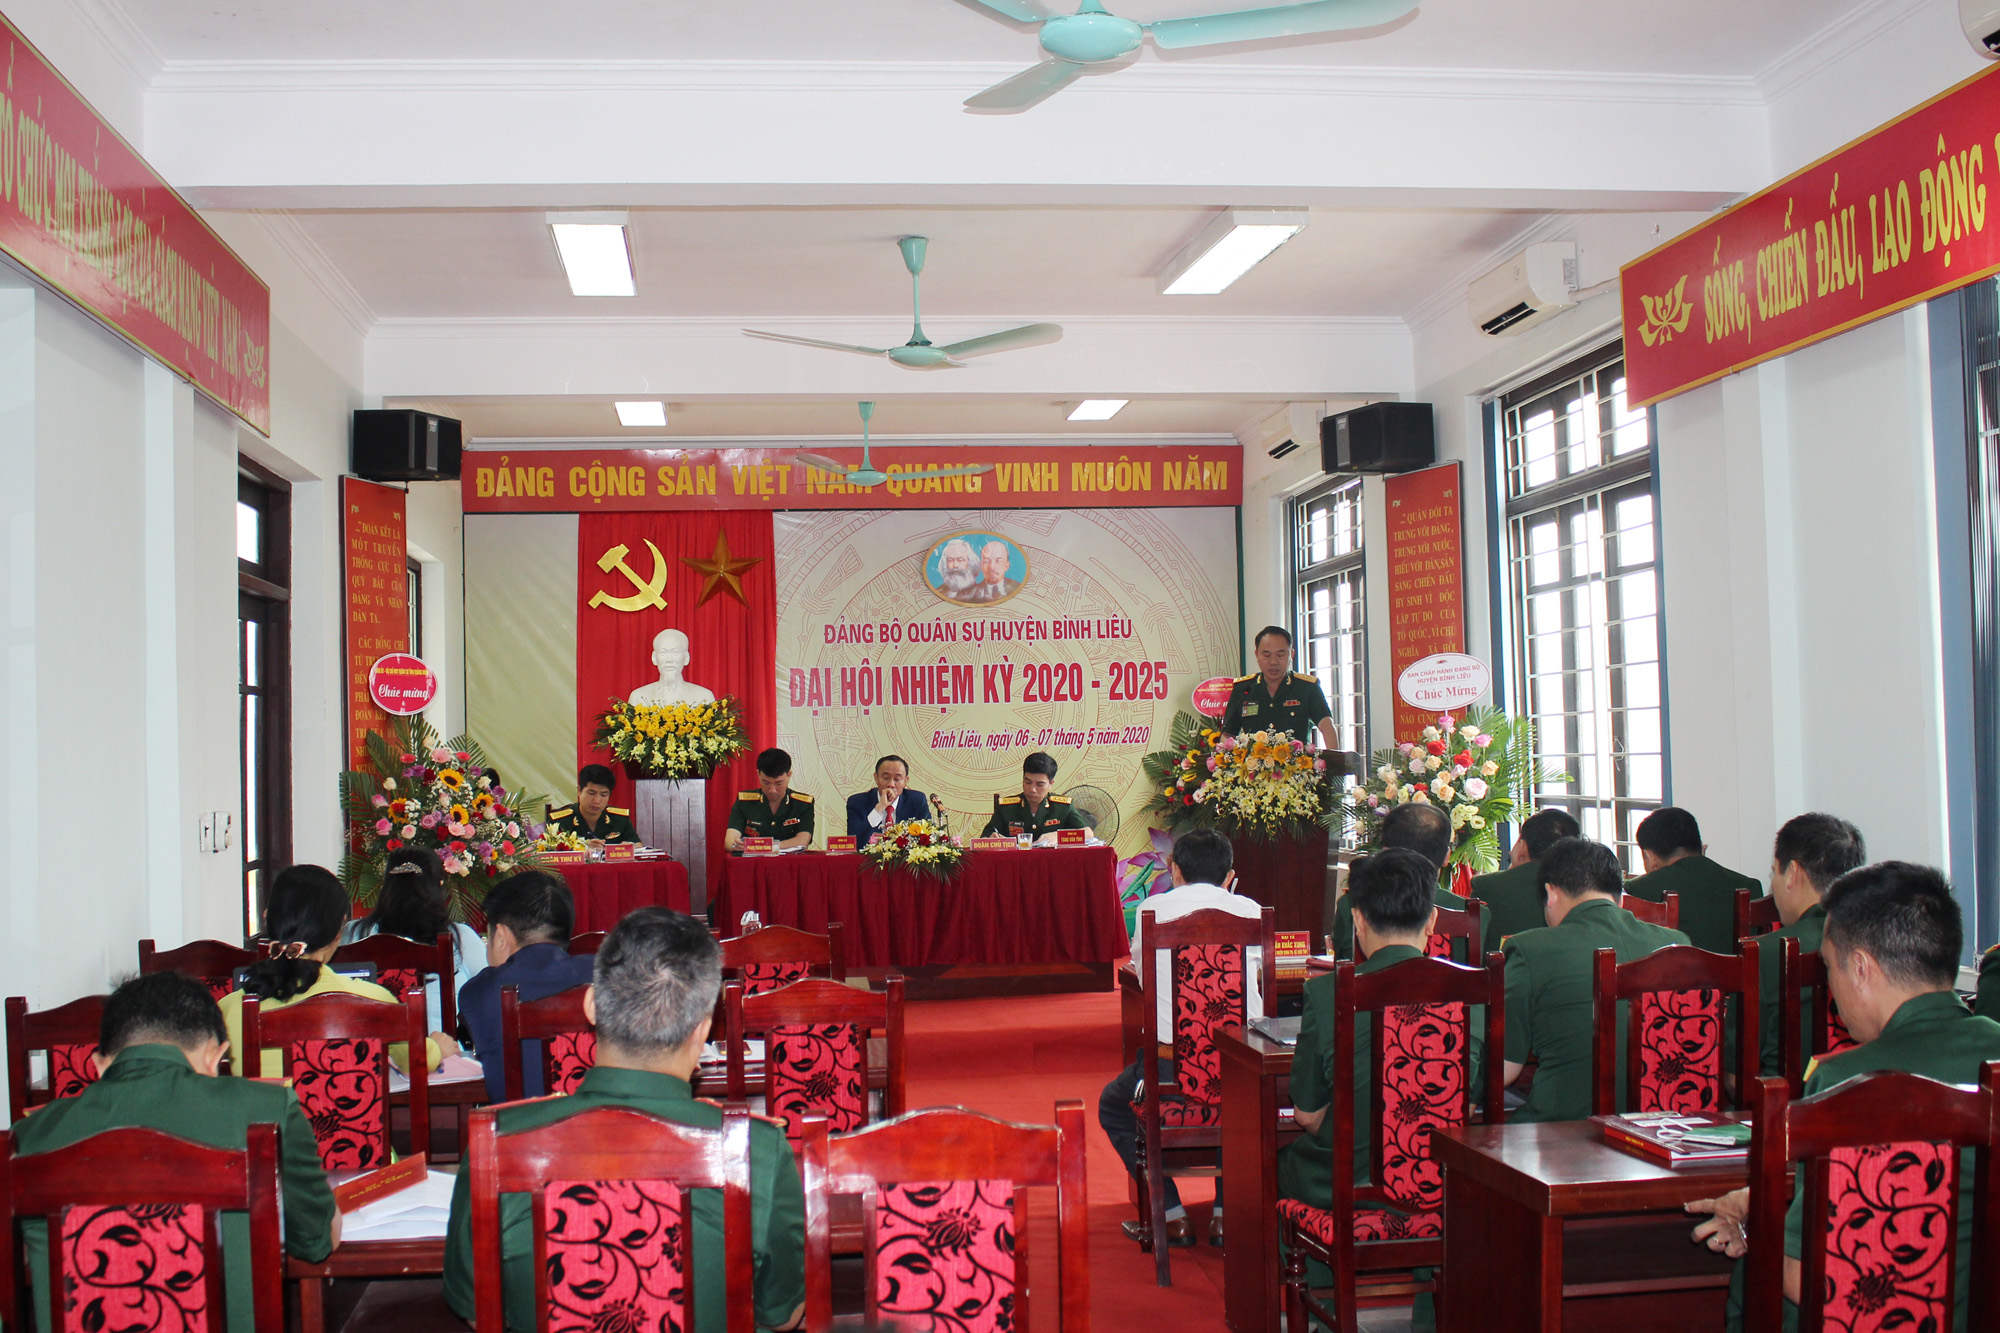 Quang cảnh Đại hội Đảng bộ Quân sự huyện Bình Liêu.